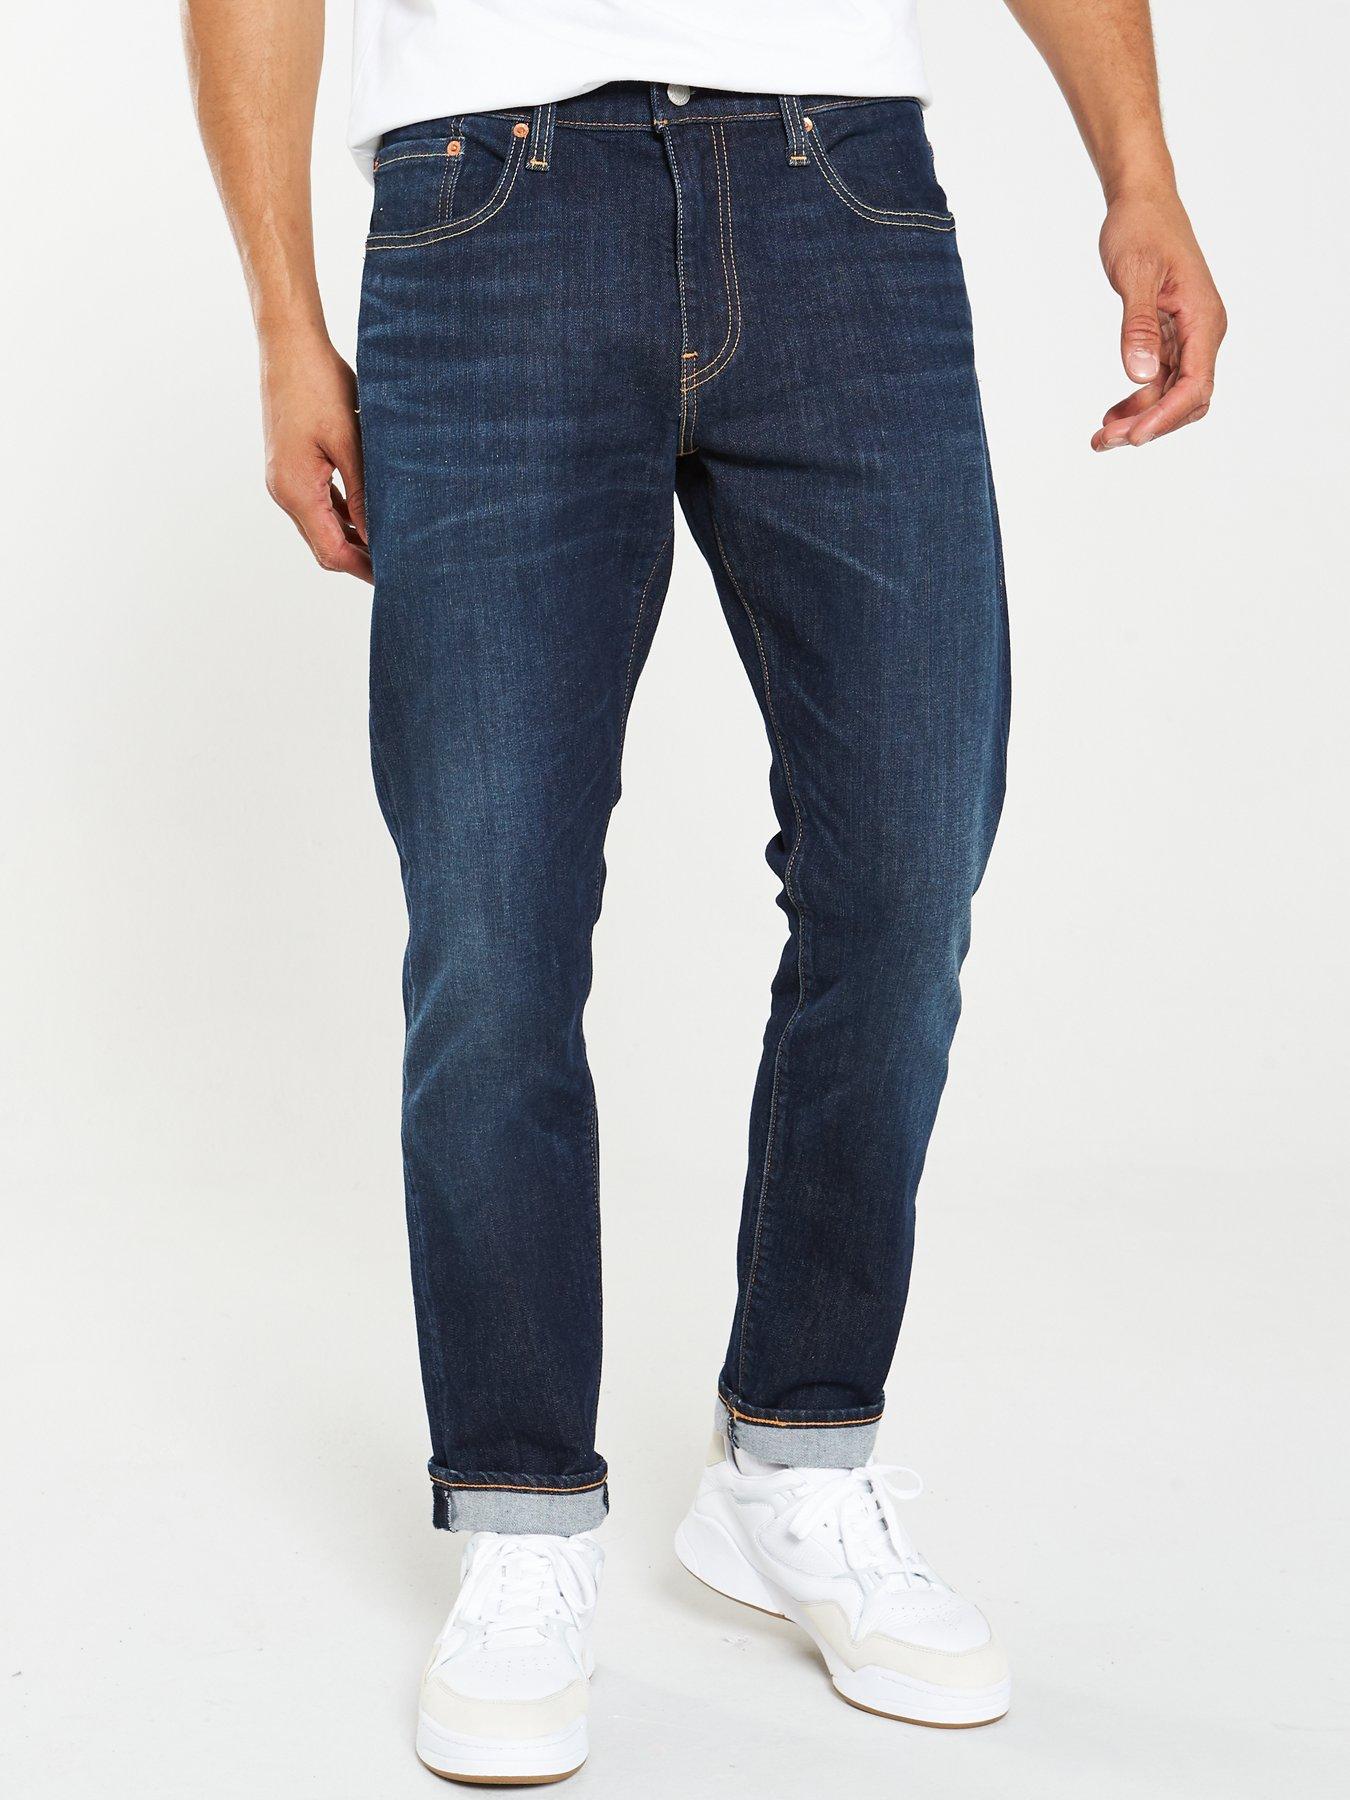 Levi's 502 Taper Slim Fit Jeans 